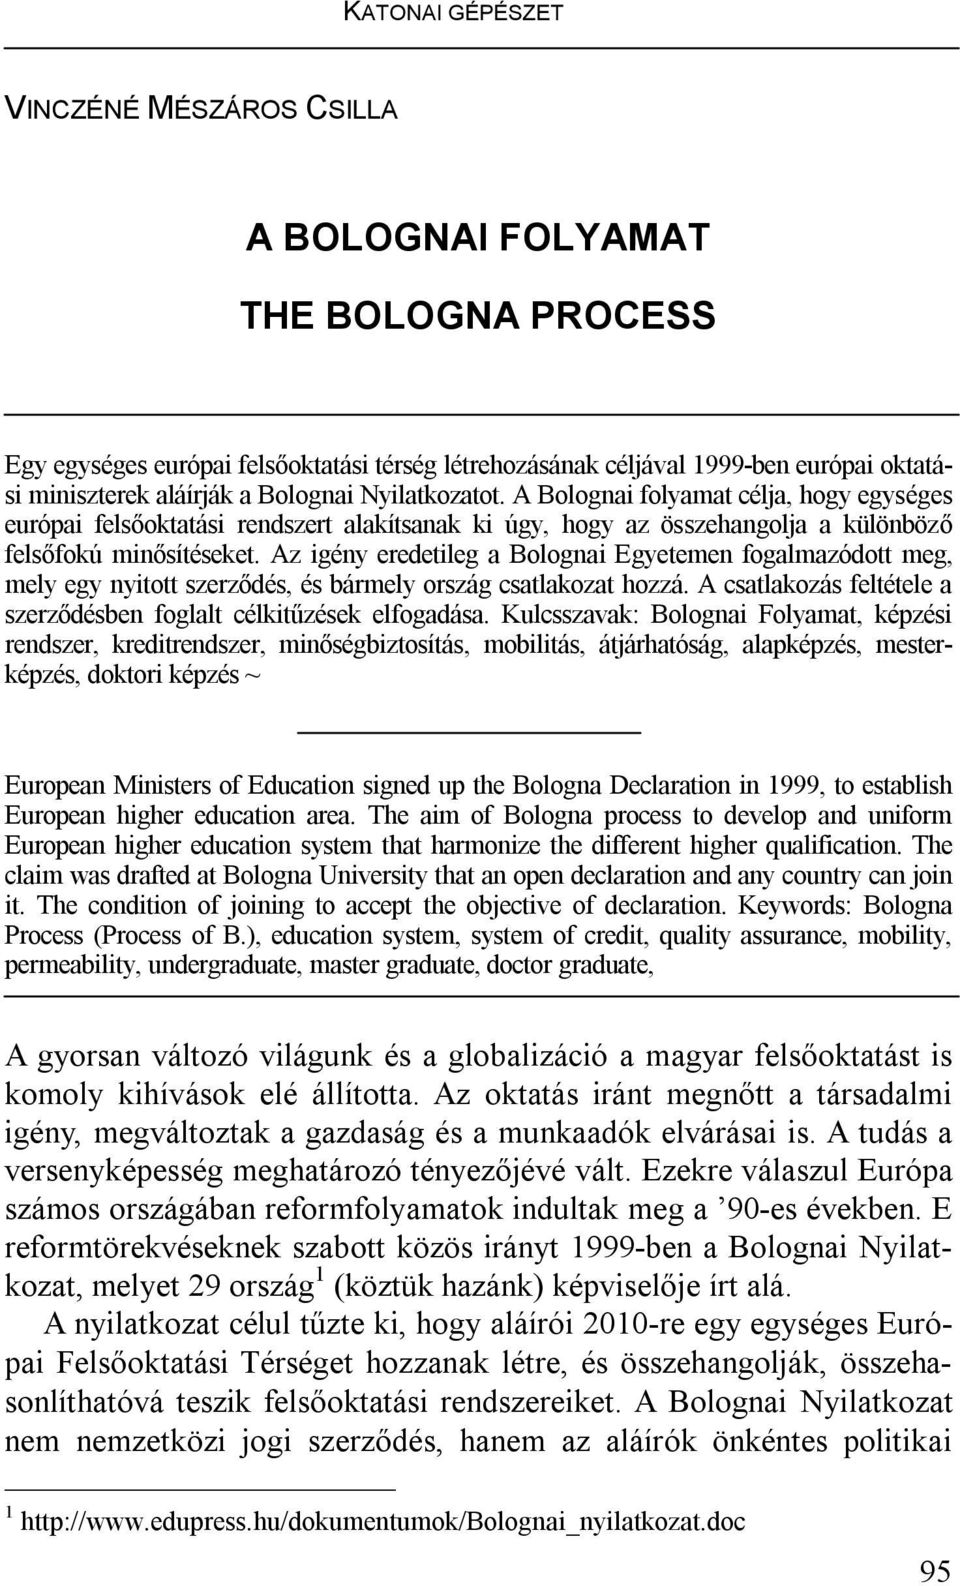 Az igény eredetileg a Bolognai Egyetemen fogalmazódott meg, mely egy nyitott szerződés, és bármely ország csatlakozat hozzá. A csatlakozás feltétele a szerződésben foglalt célkitűzések elfogadása.